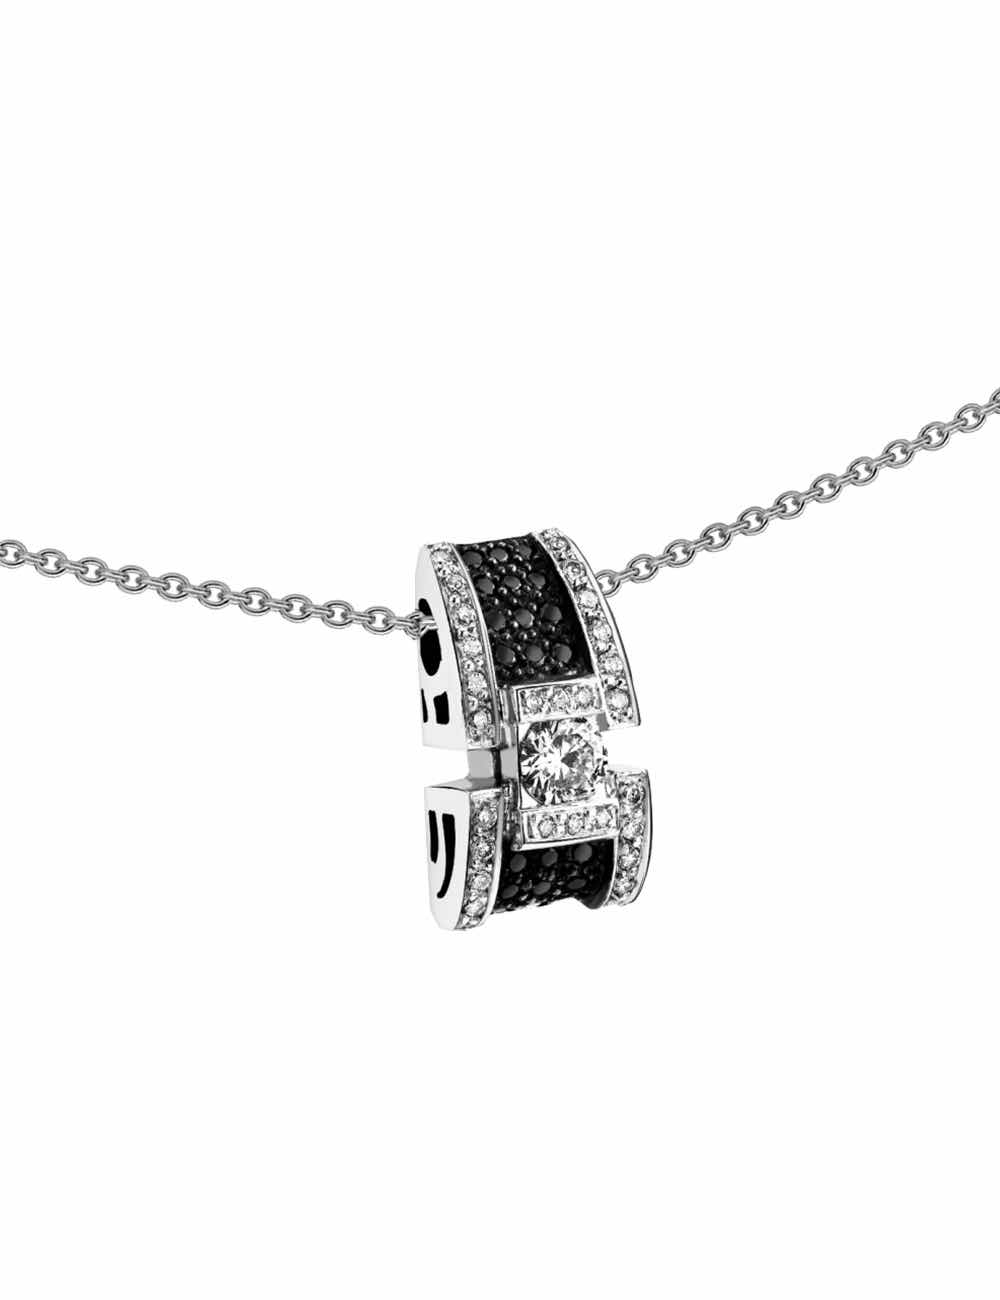 Pendentif luxe pour femme en or blanc entièrement serti de diamants blancs et diamants noirs